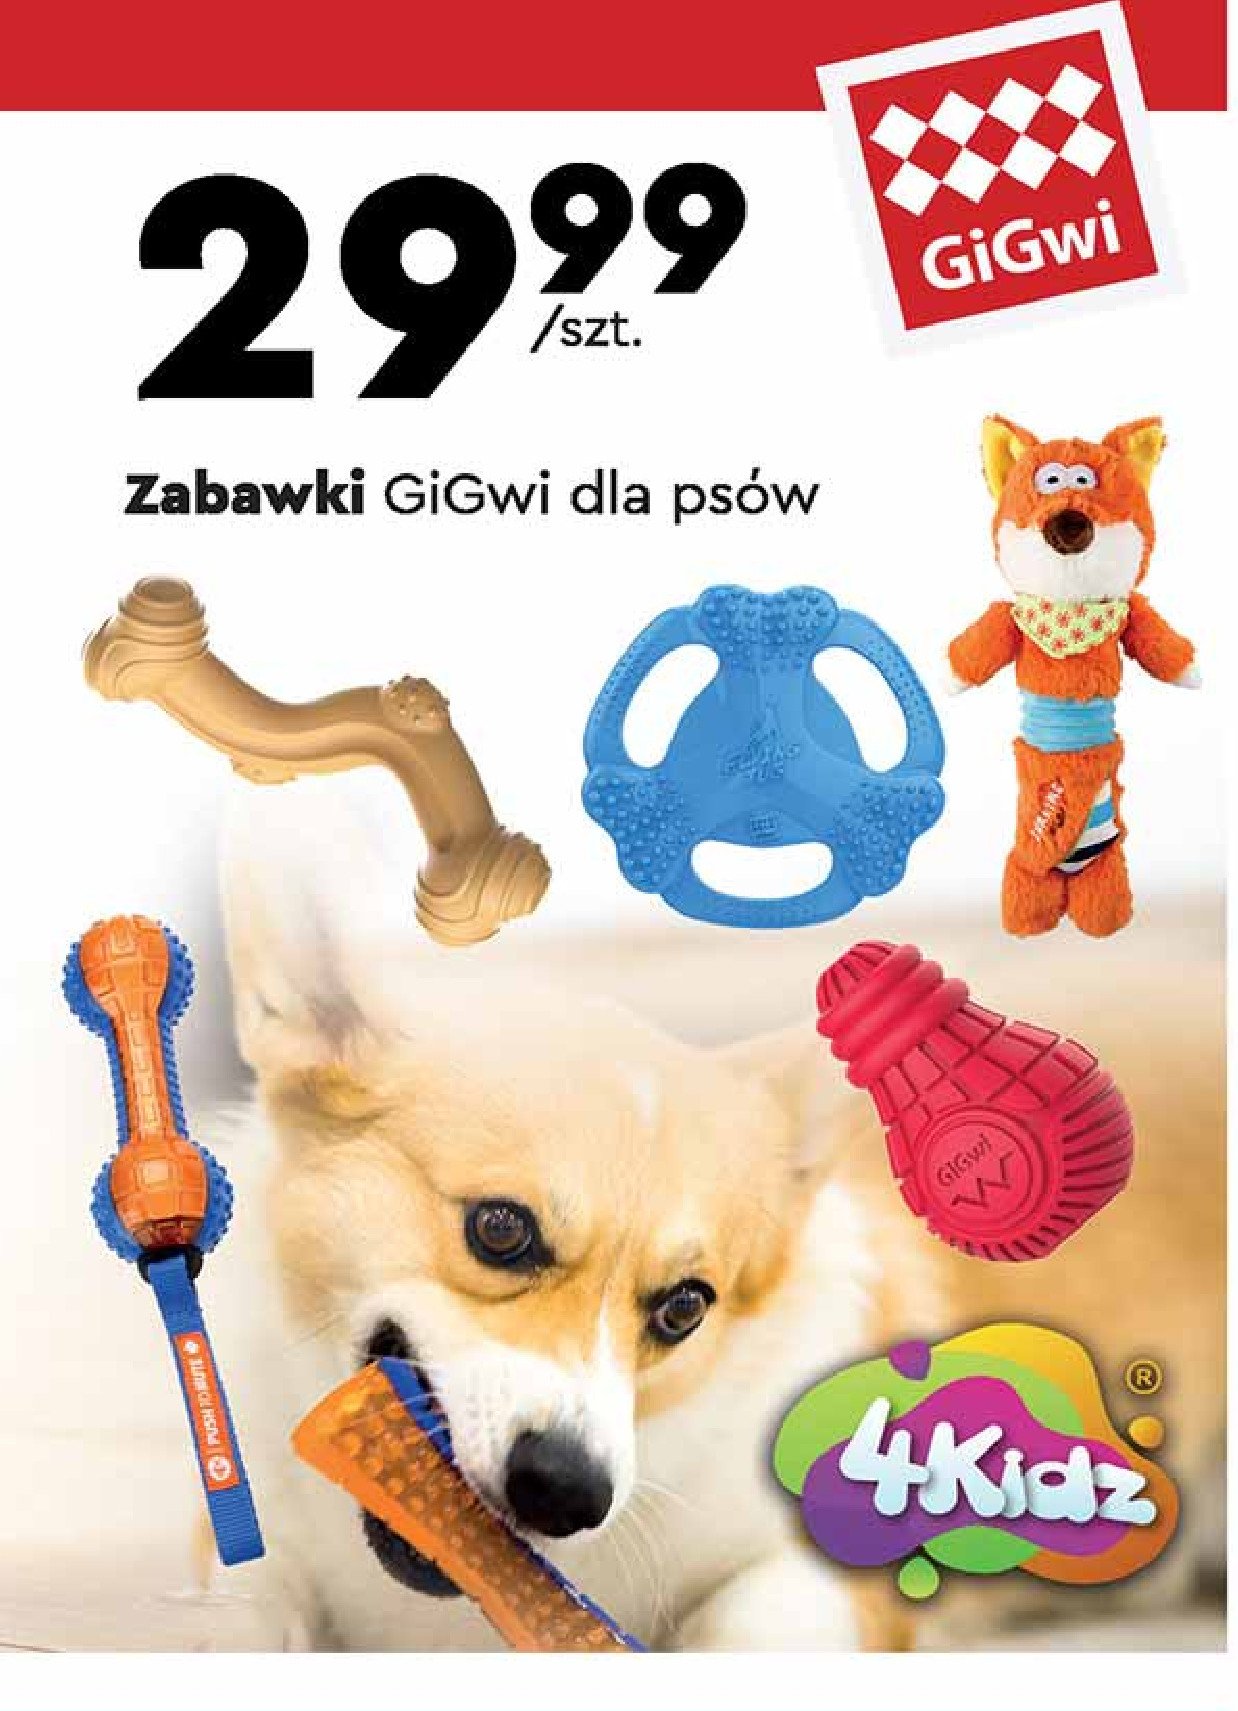 Zabawka dla psa GIGWI promocje